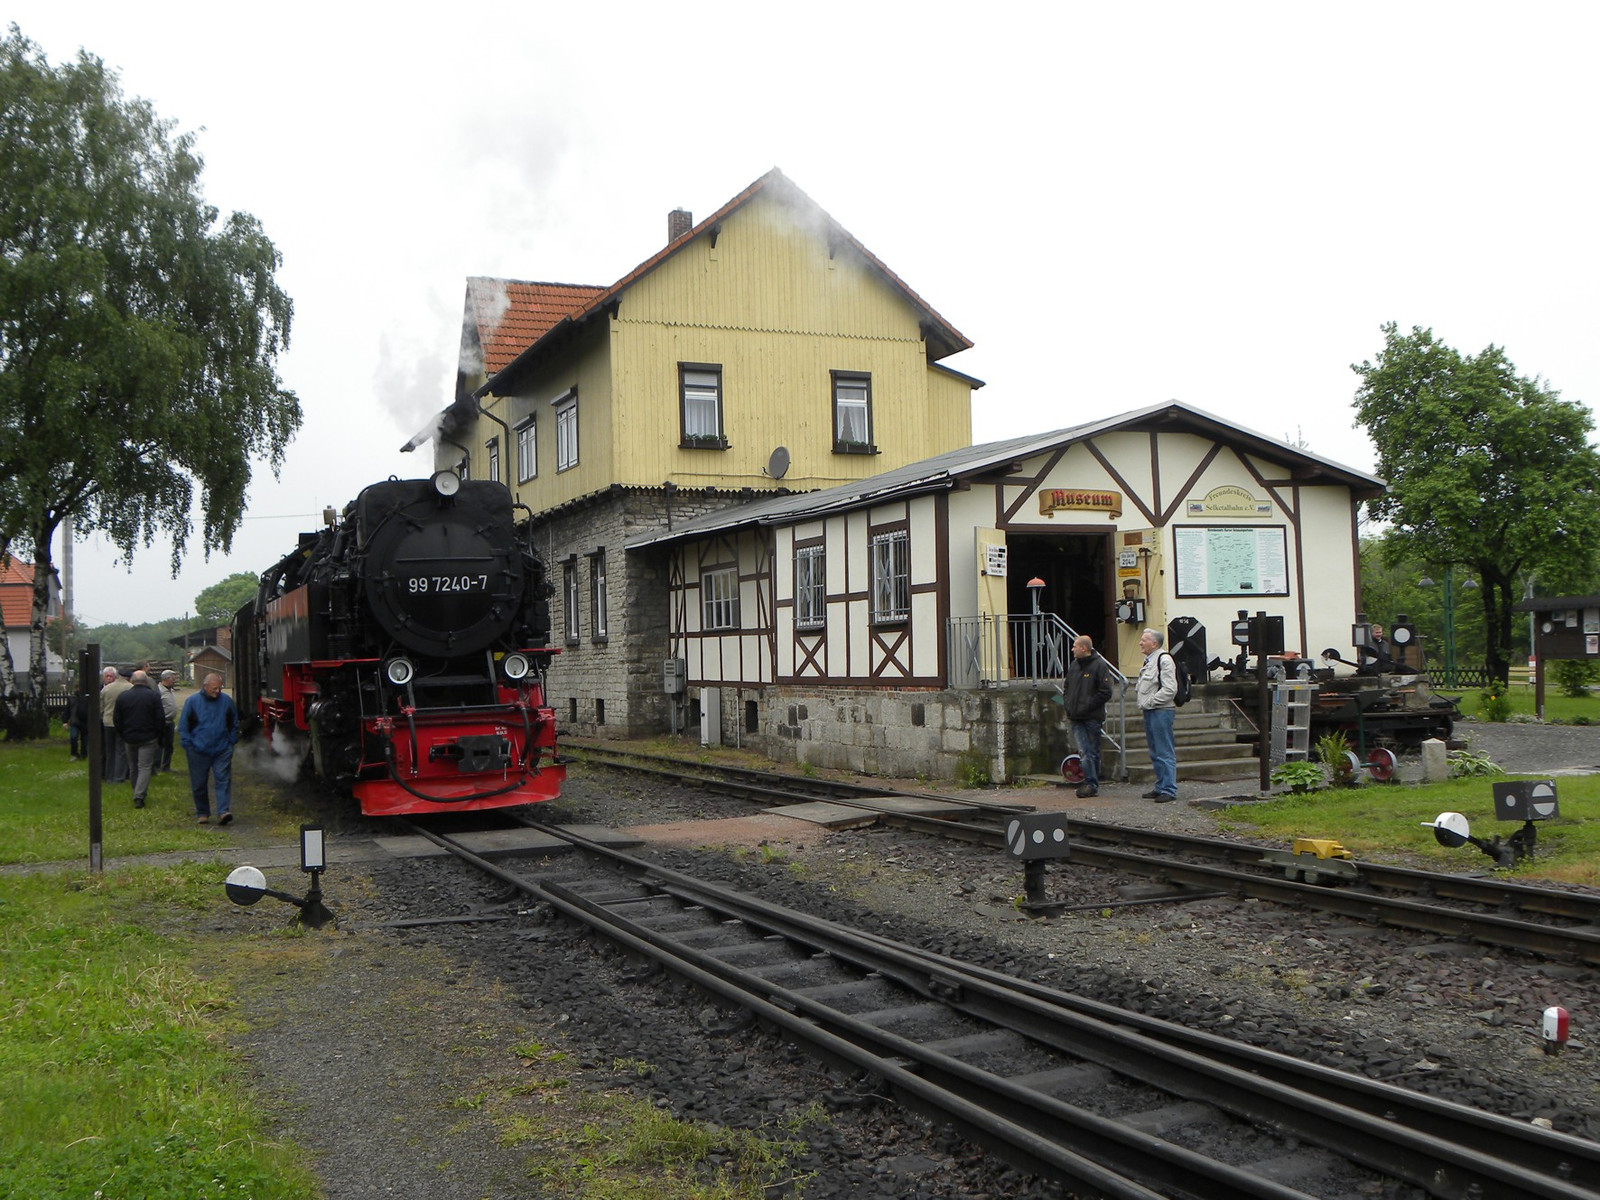 Museum "Anhaltinische Harzbahn" im Bahnhof Gernrode (Harz)